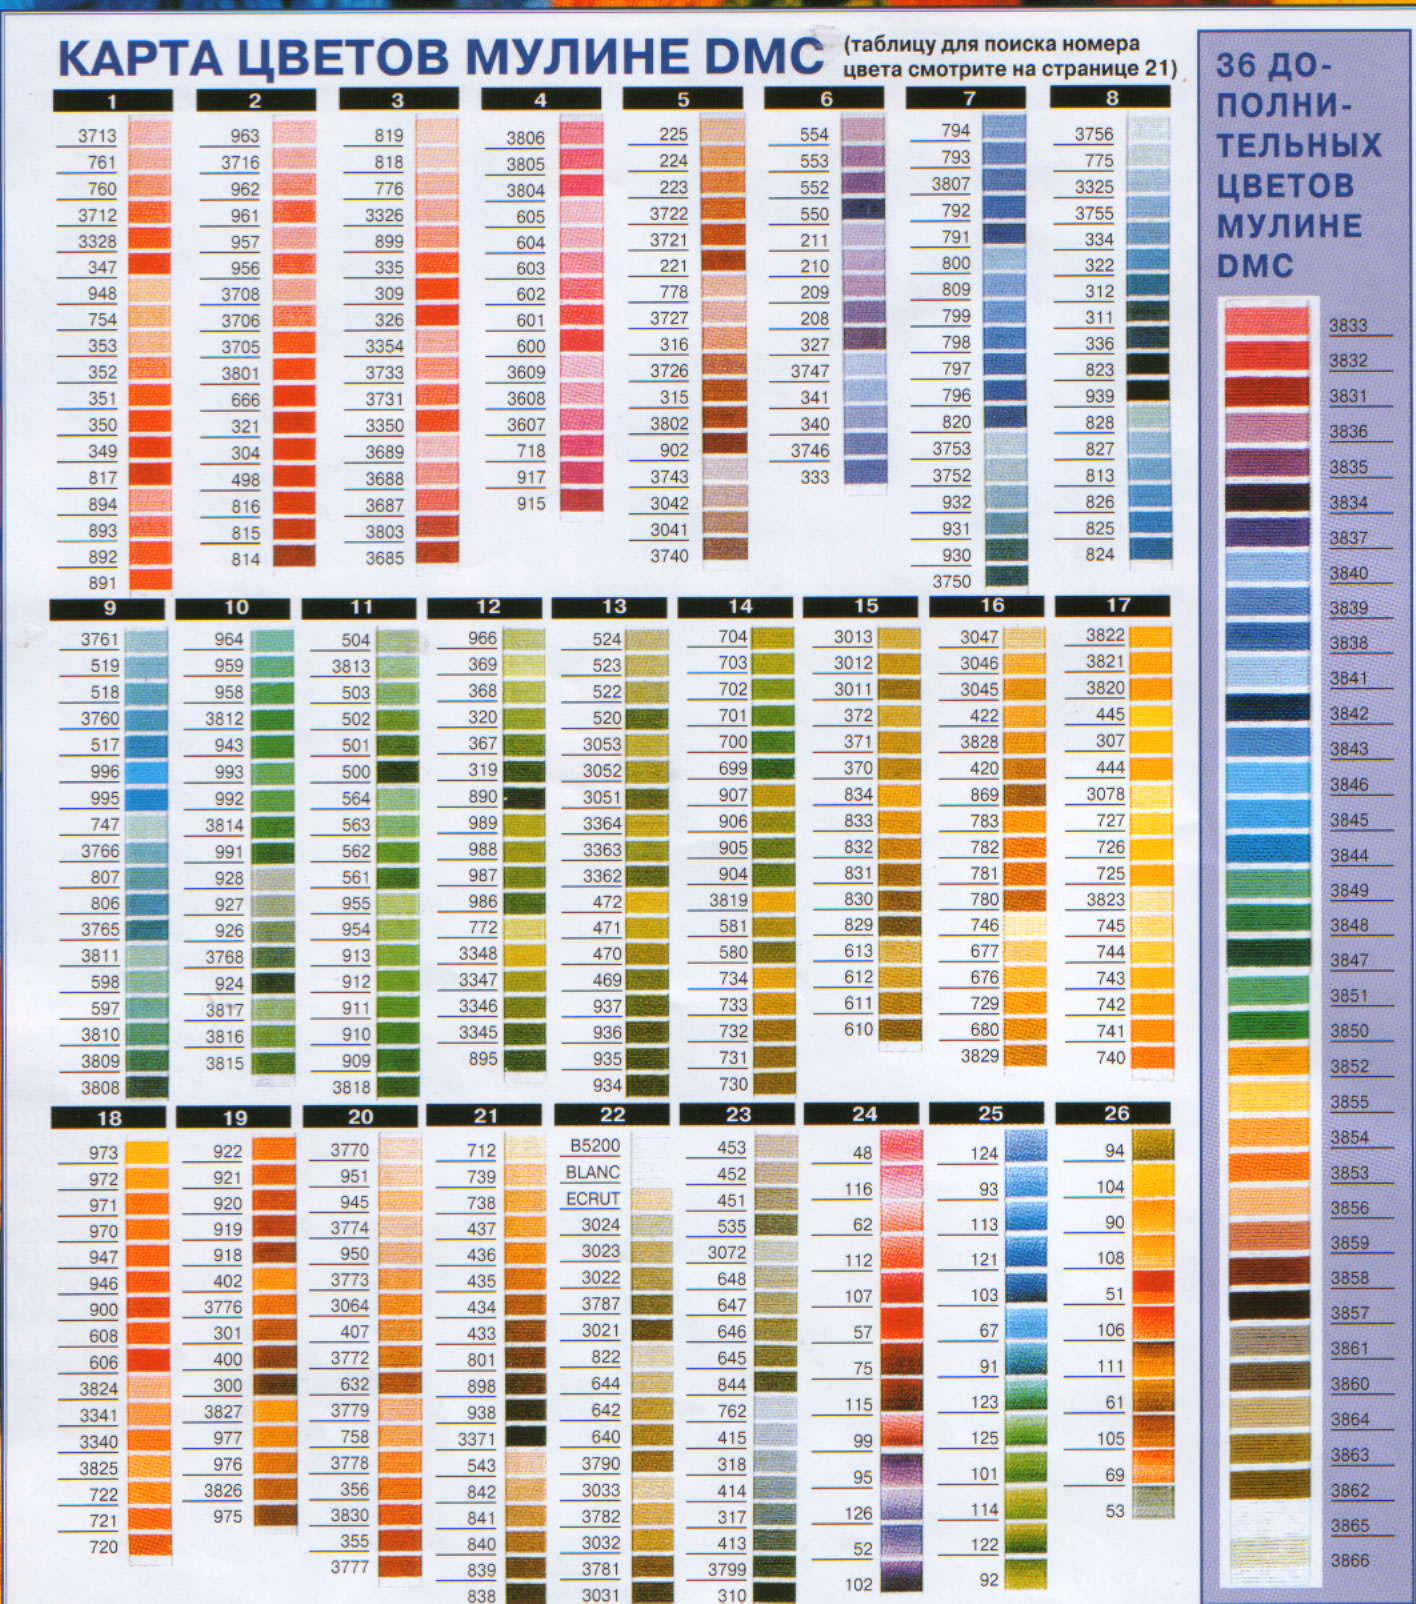 Пример дмс. Таблица цветов ниток мулине СХС. Цветовая палитра мулине ДМС. Нитки мулине ДМС таблица. Нитки мулине DMC таблица цветов.